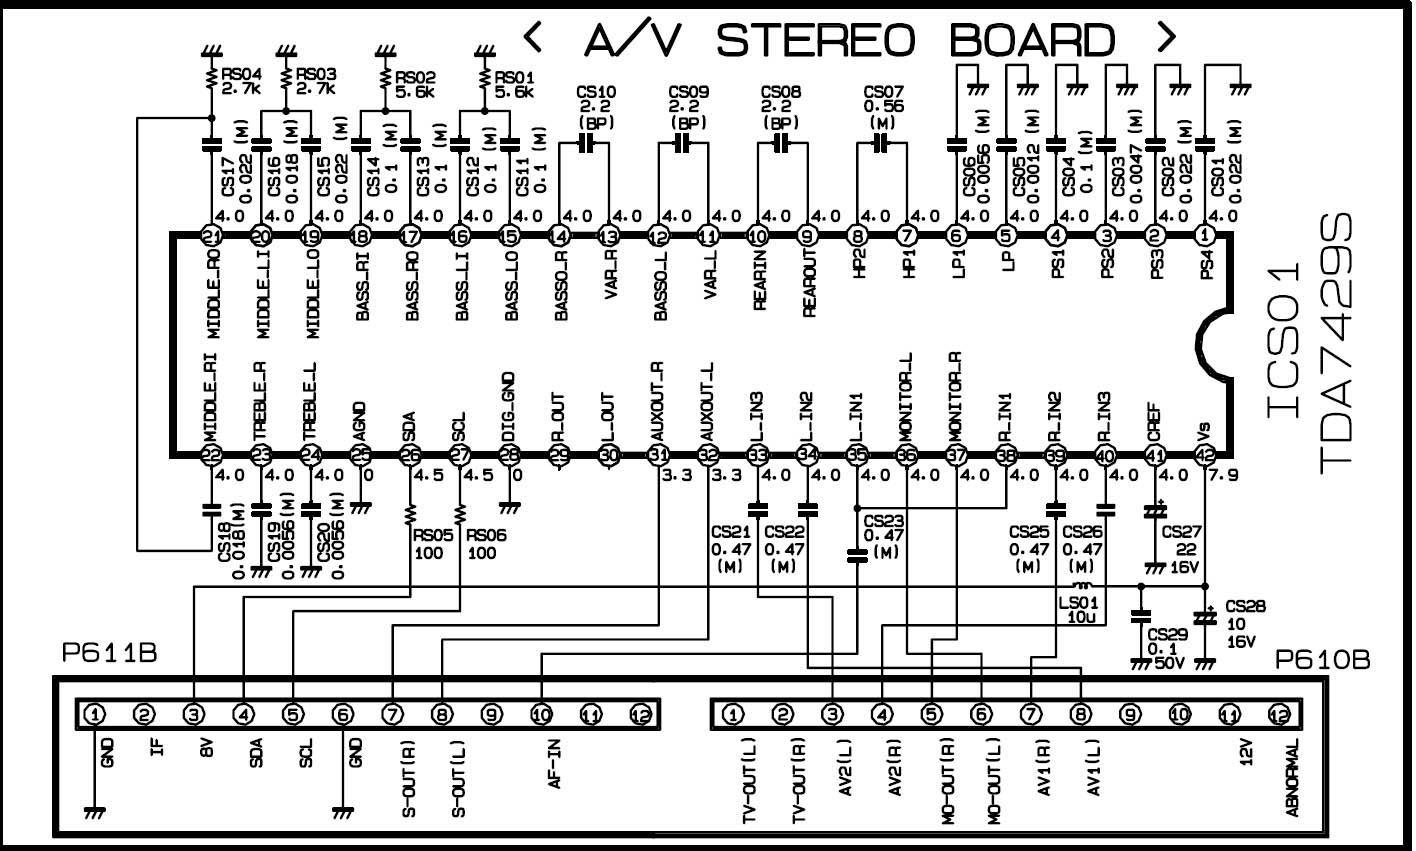 Принципиальная электрическая схема модуля A/V STEREO BOARD